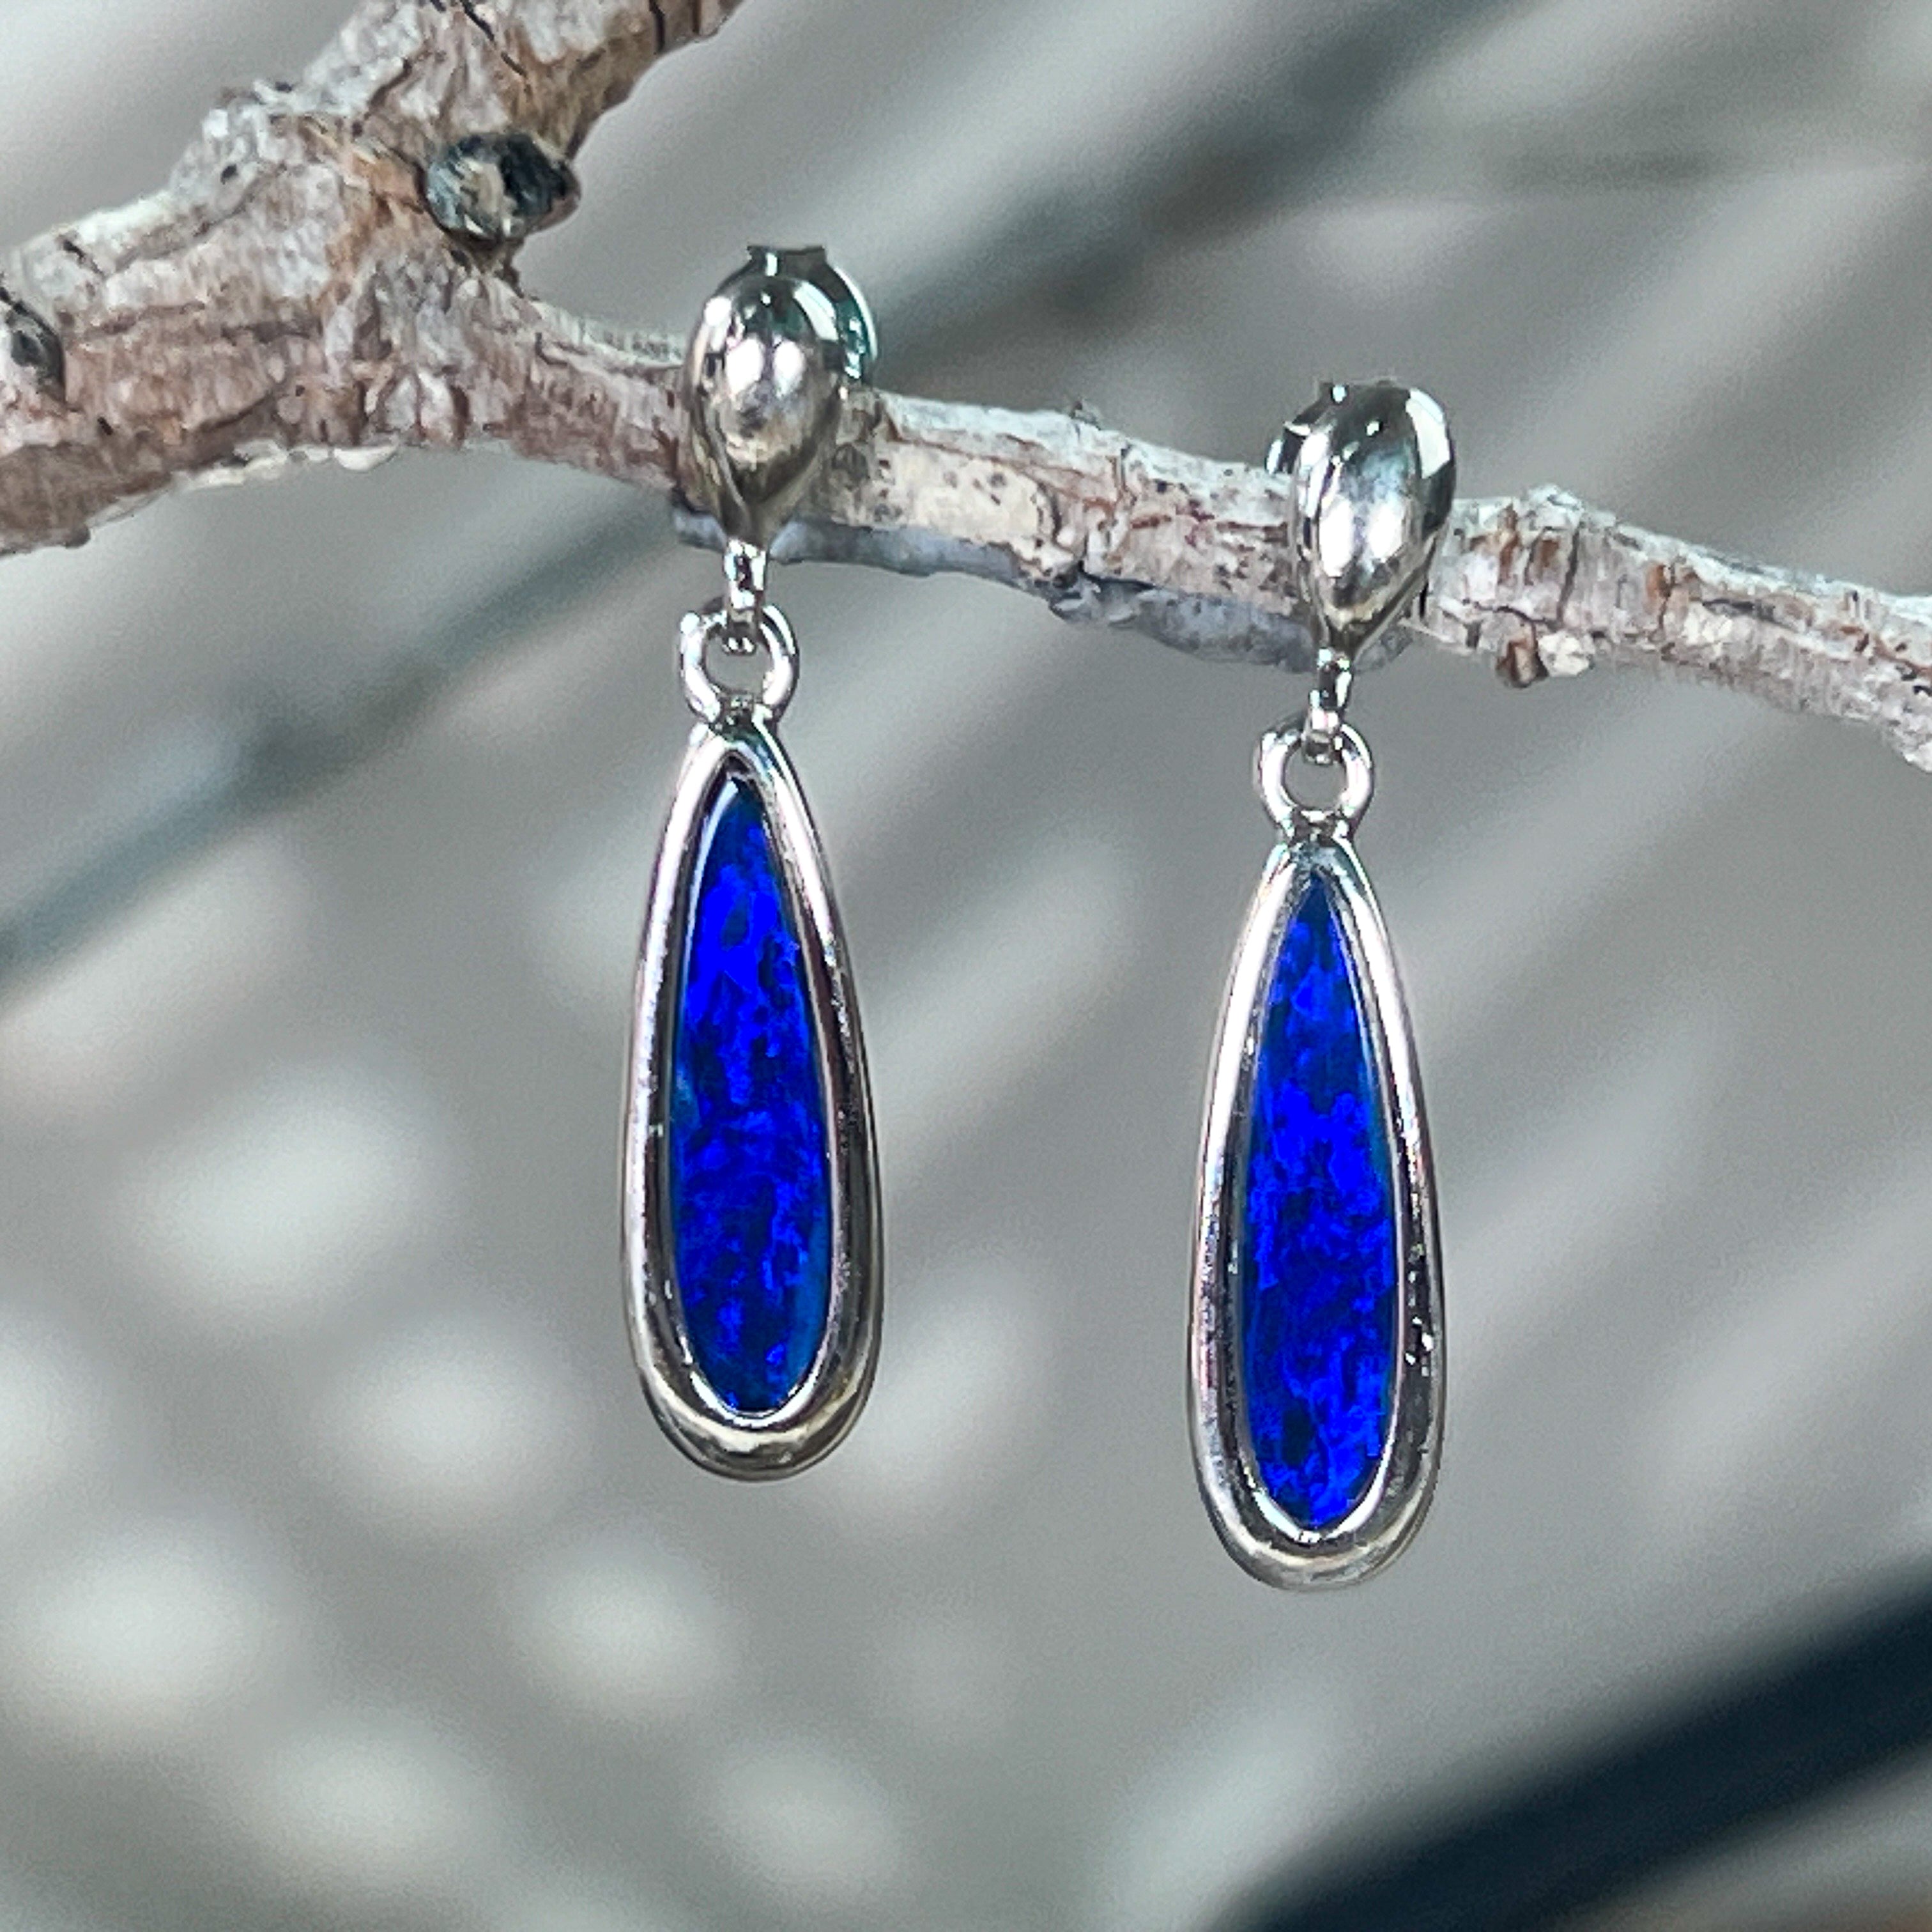 Sterling Silver dangling long drop earrings with blue opal doublets - Masterpiece Jewellery Opal & Gems Sydney Australia | Online Shop